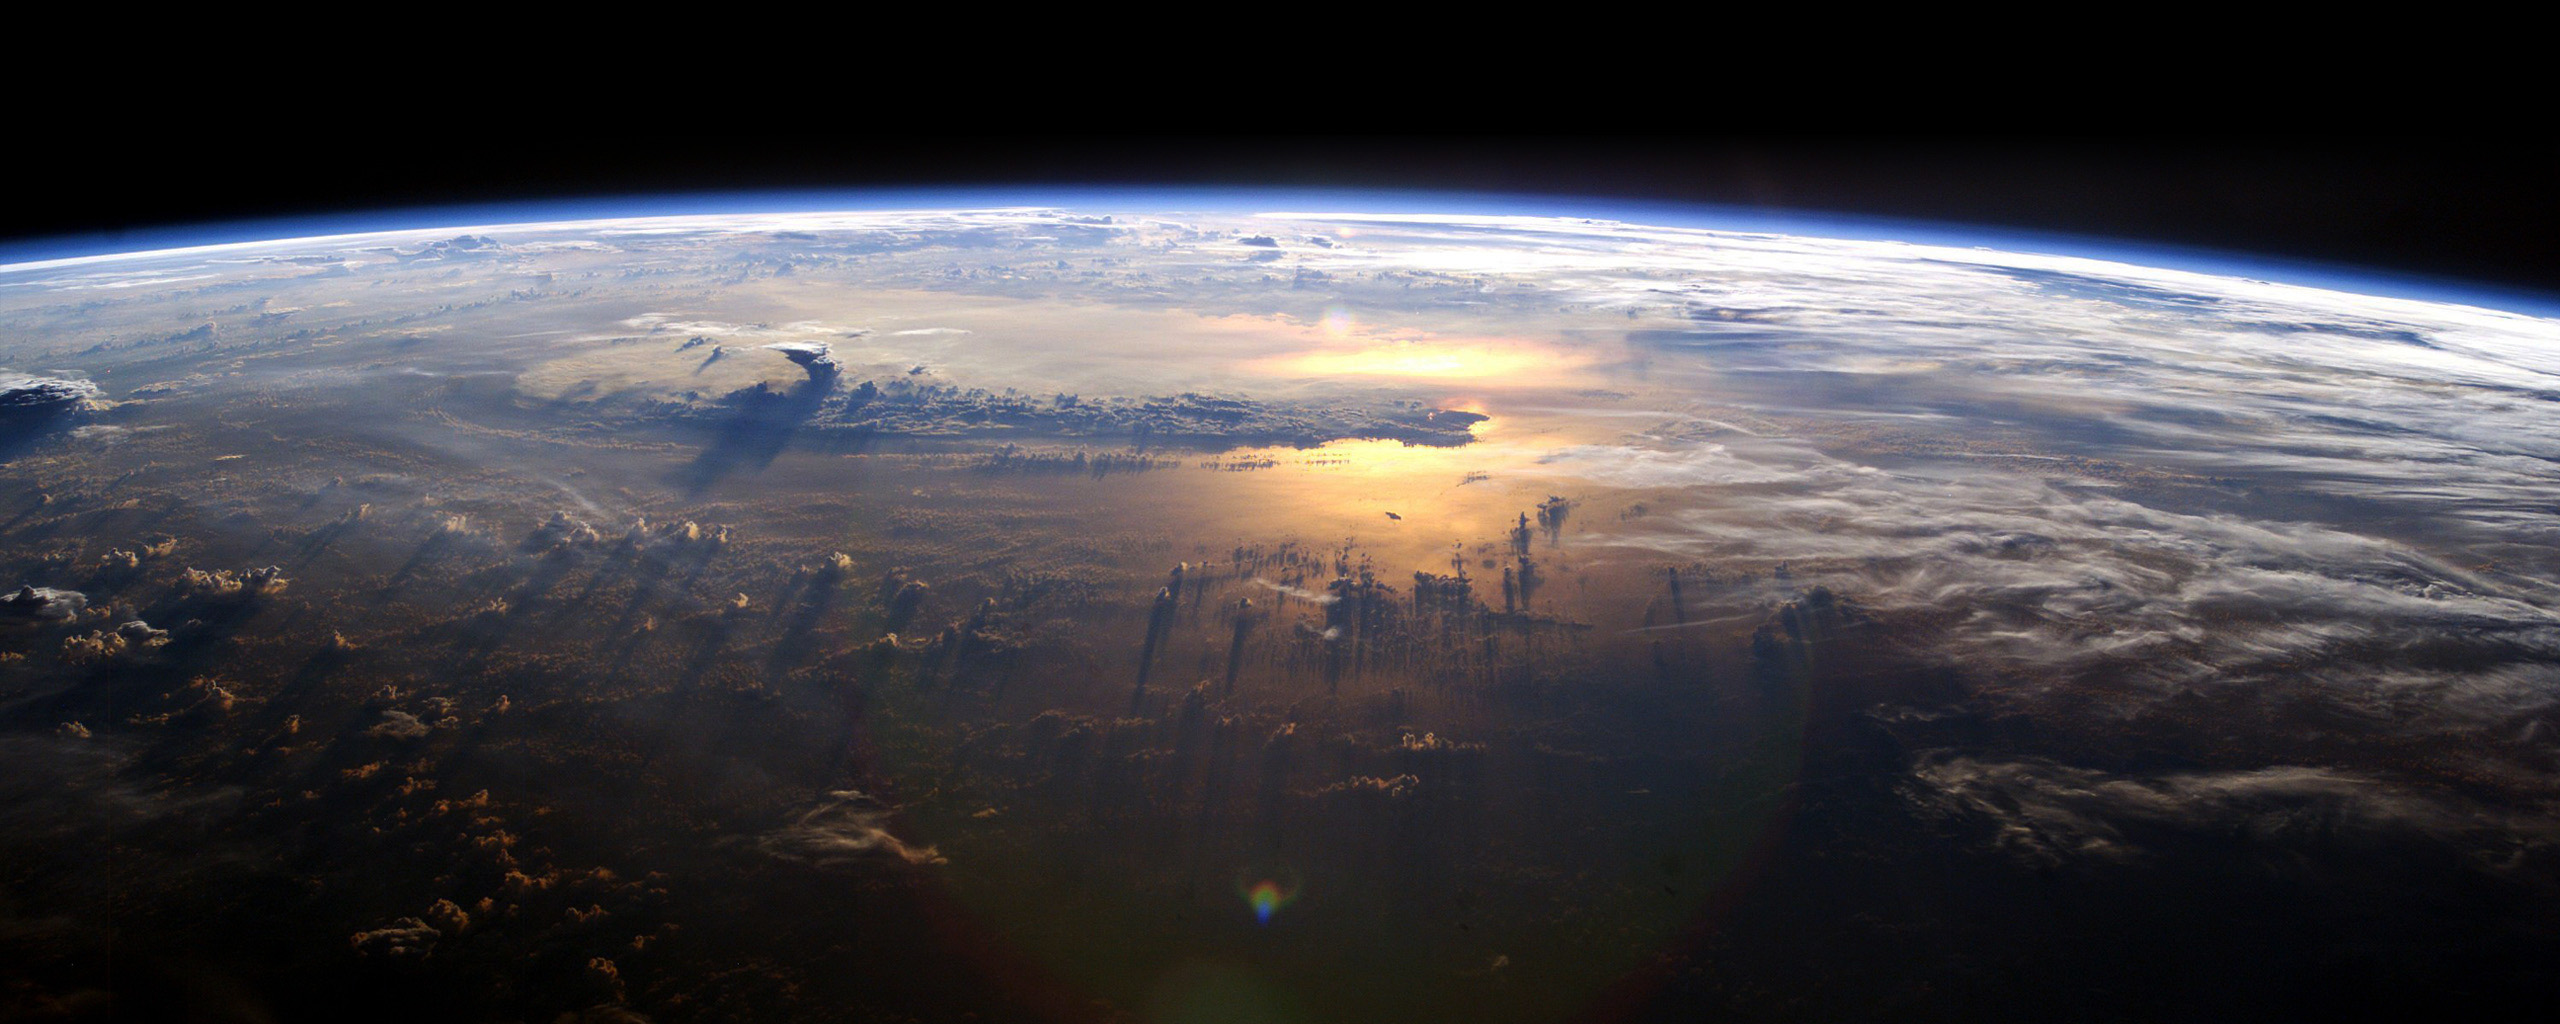 La NASA anuncia una importante reducción en el agujero de la capa de ozono